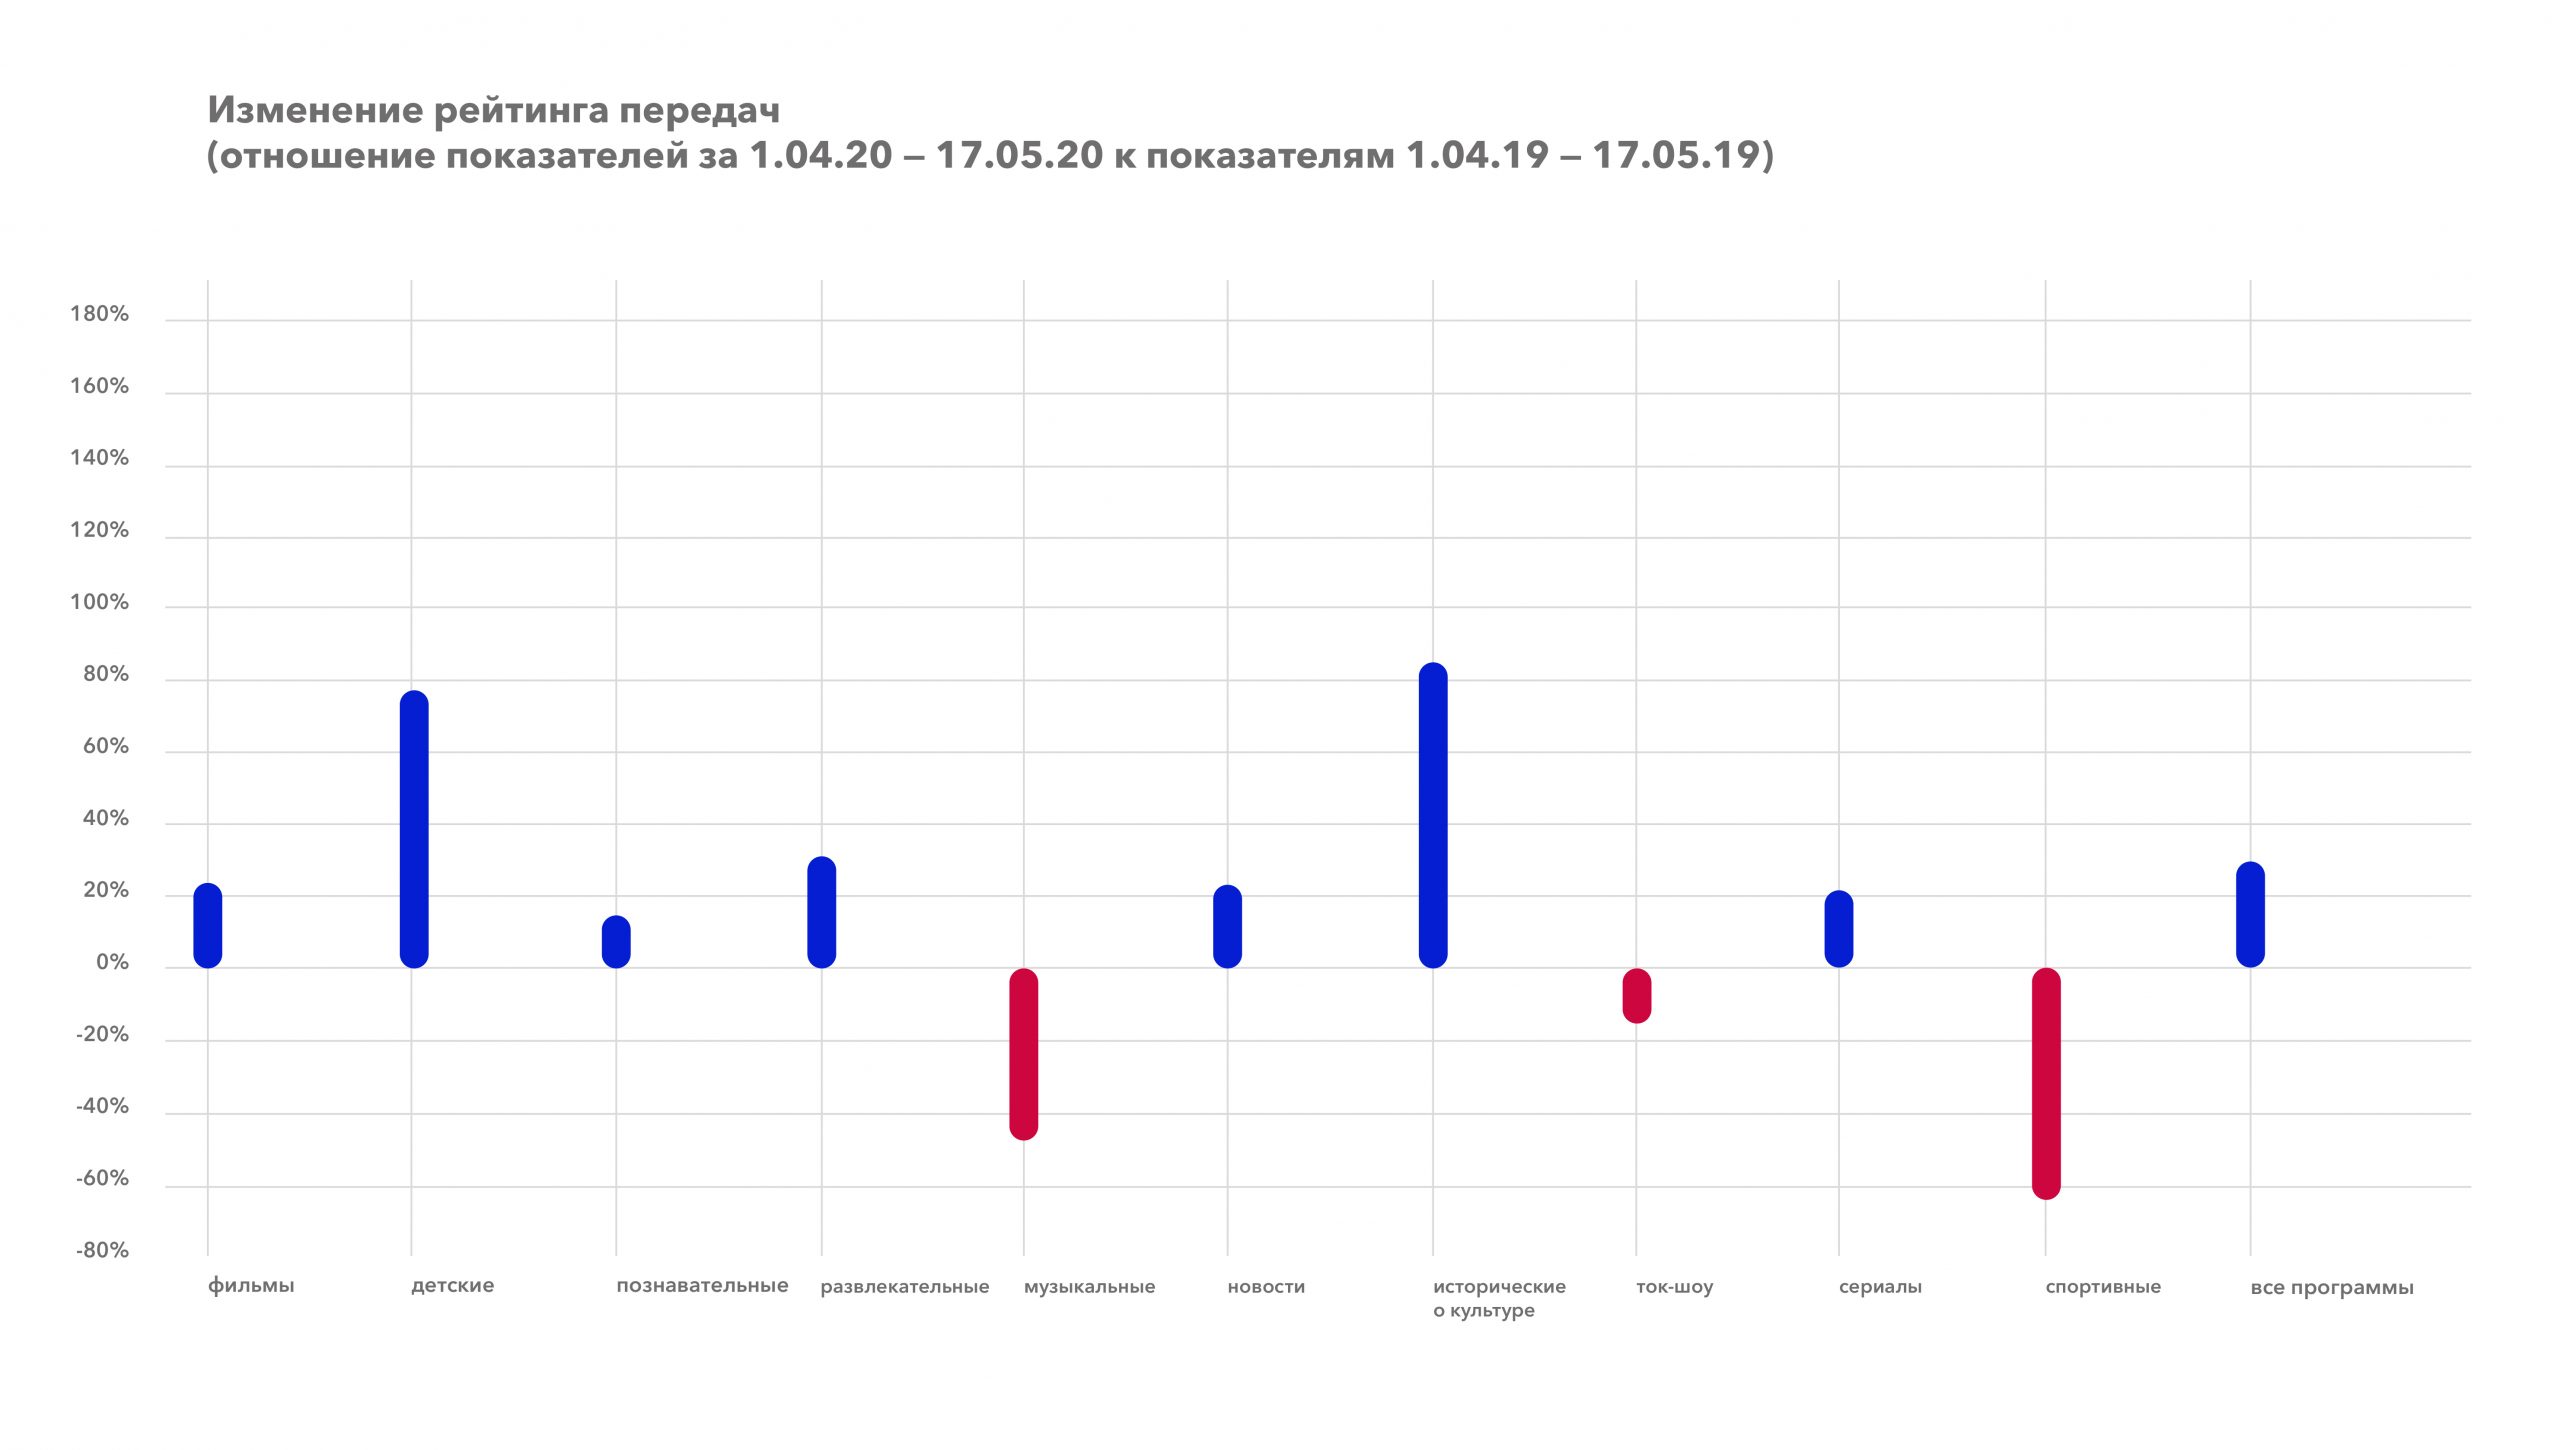 Izmenenie rejtinga peredach zhanry 1.04.20 17.05.20 k 1.04.19 17.05.19 scaled